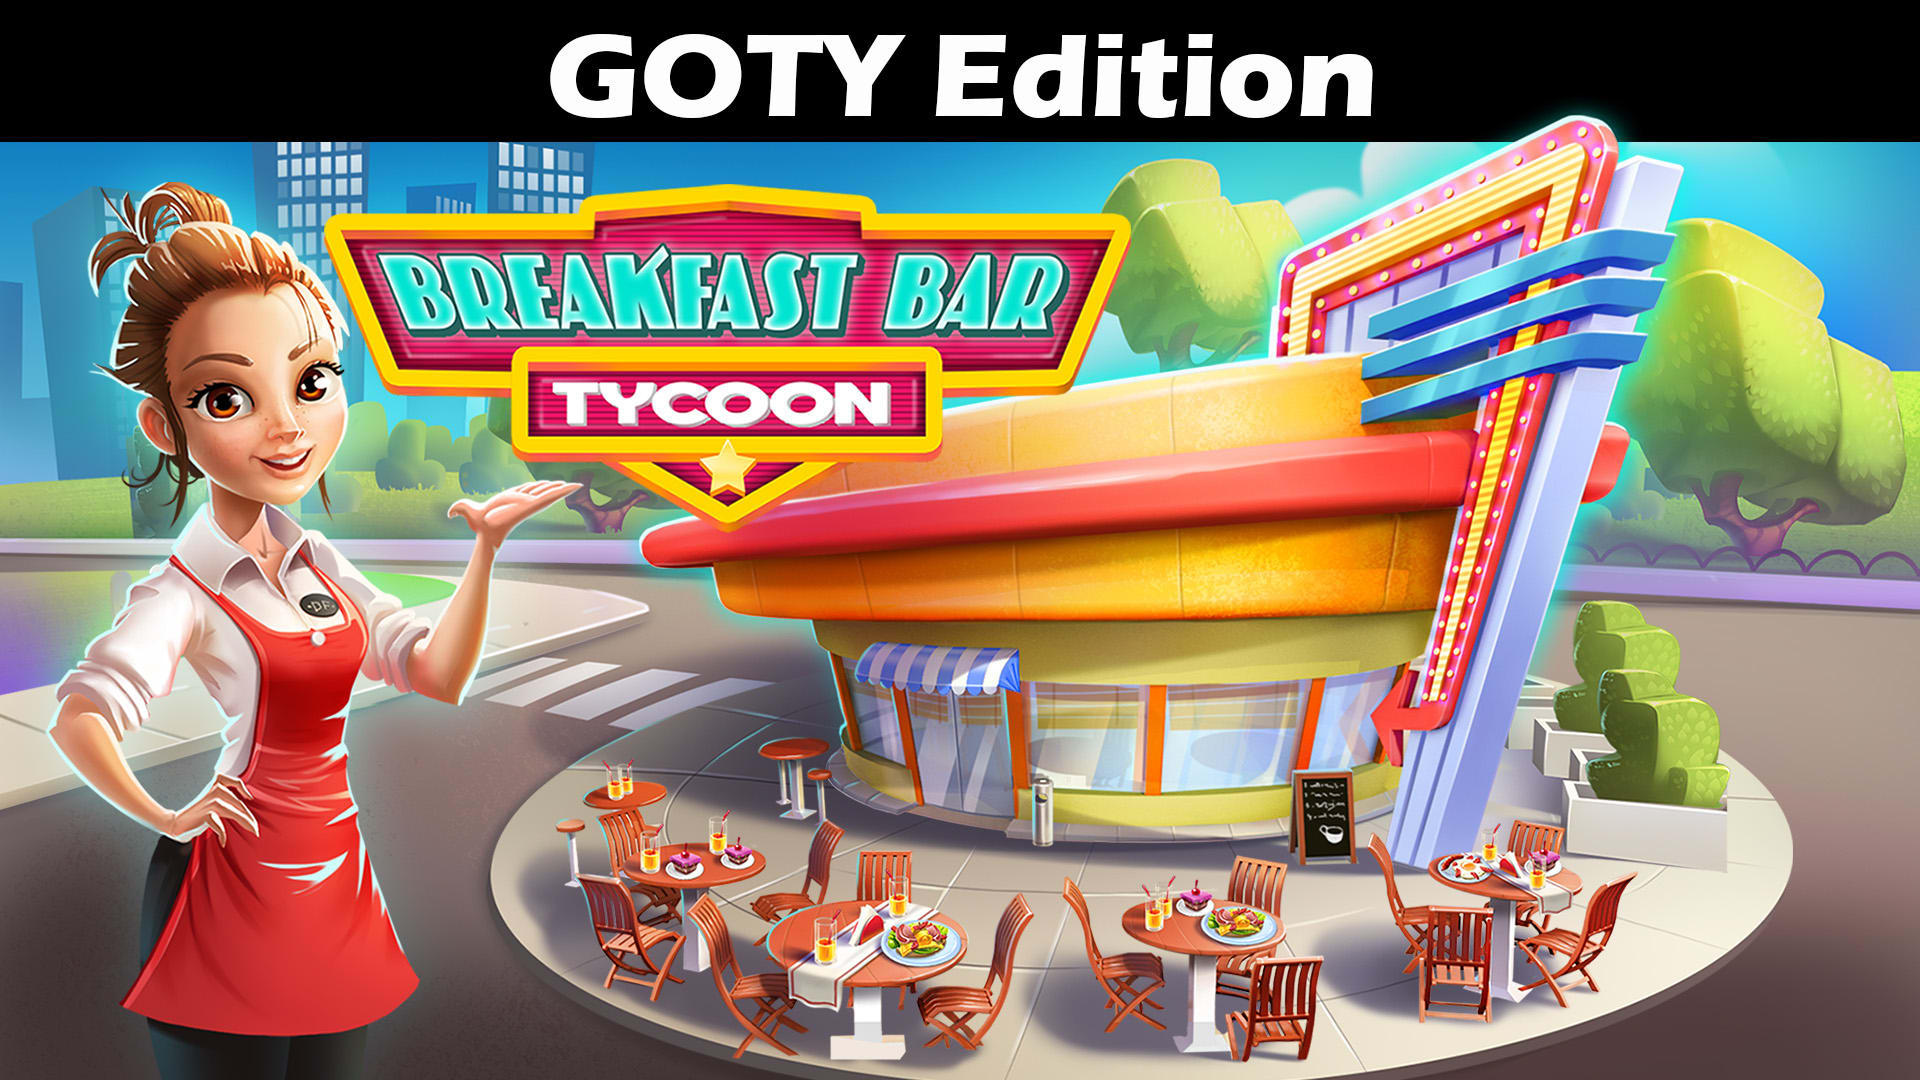 Breakfast Bar Tycoon GOTY Edition